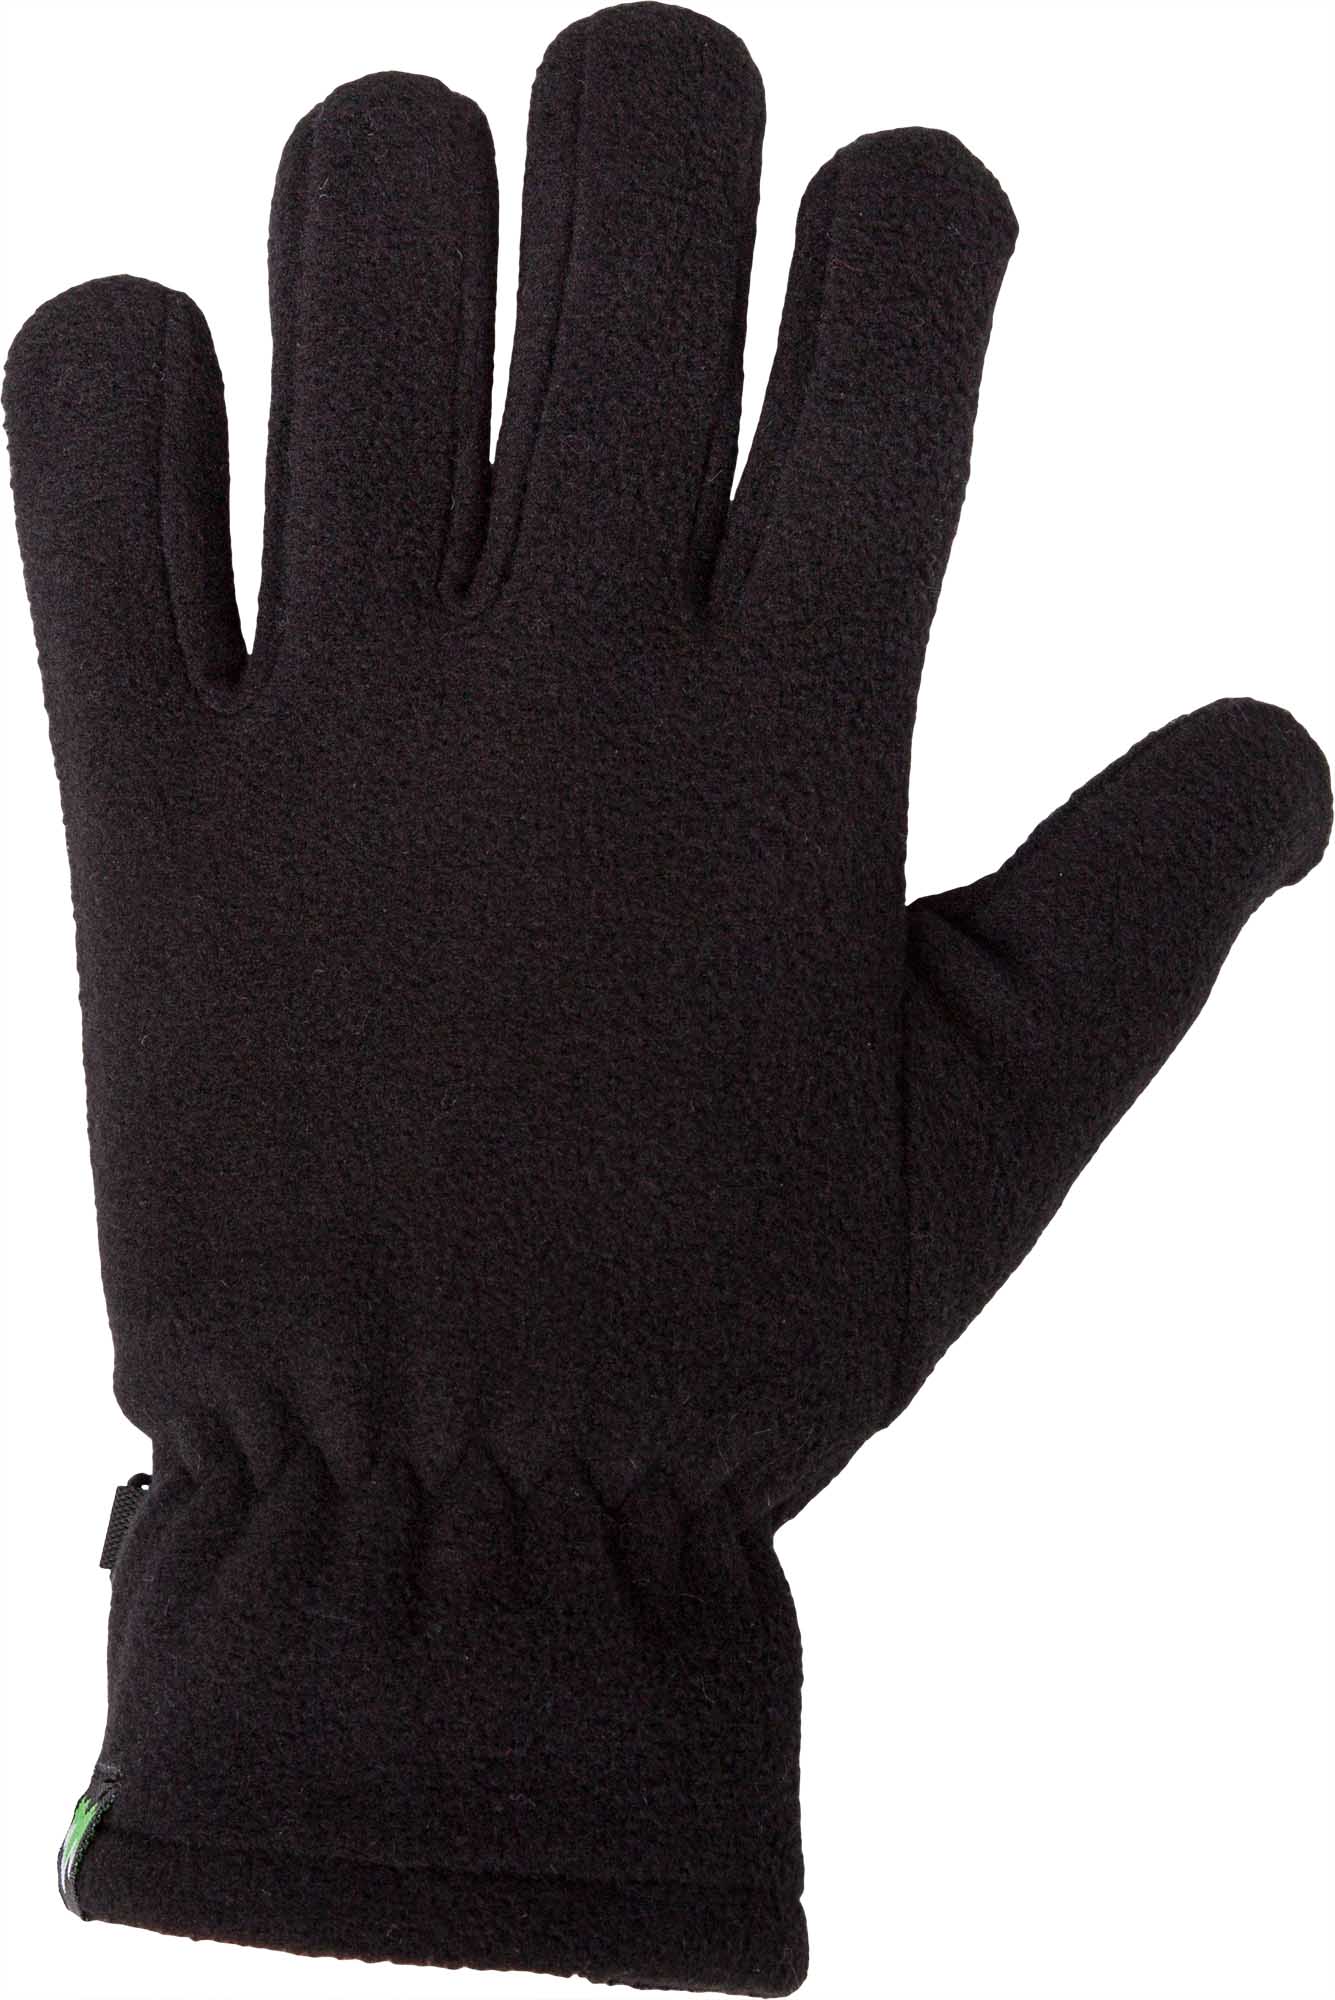 Children’s fleece gloves